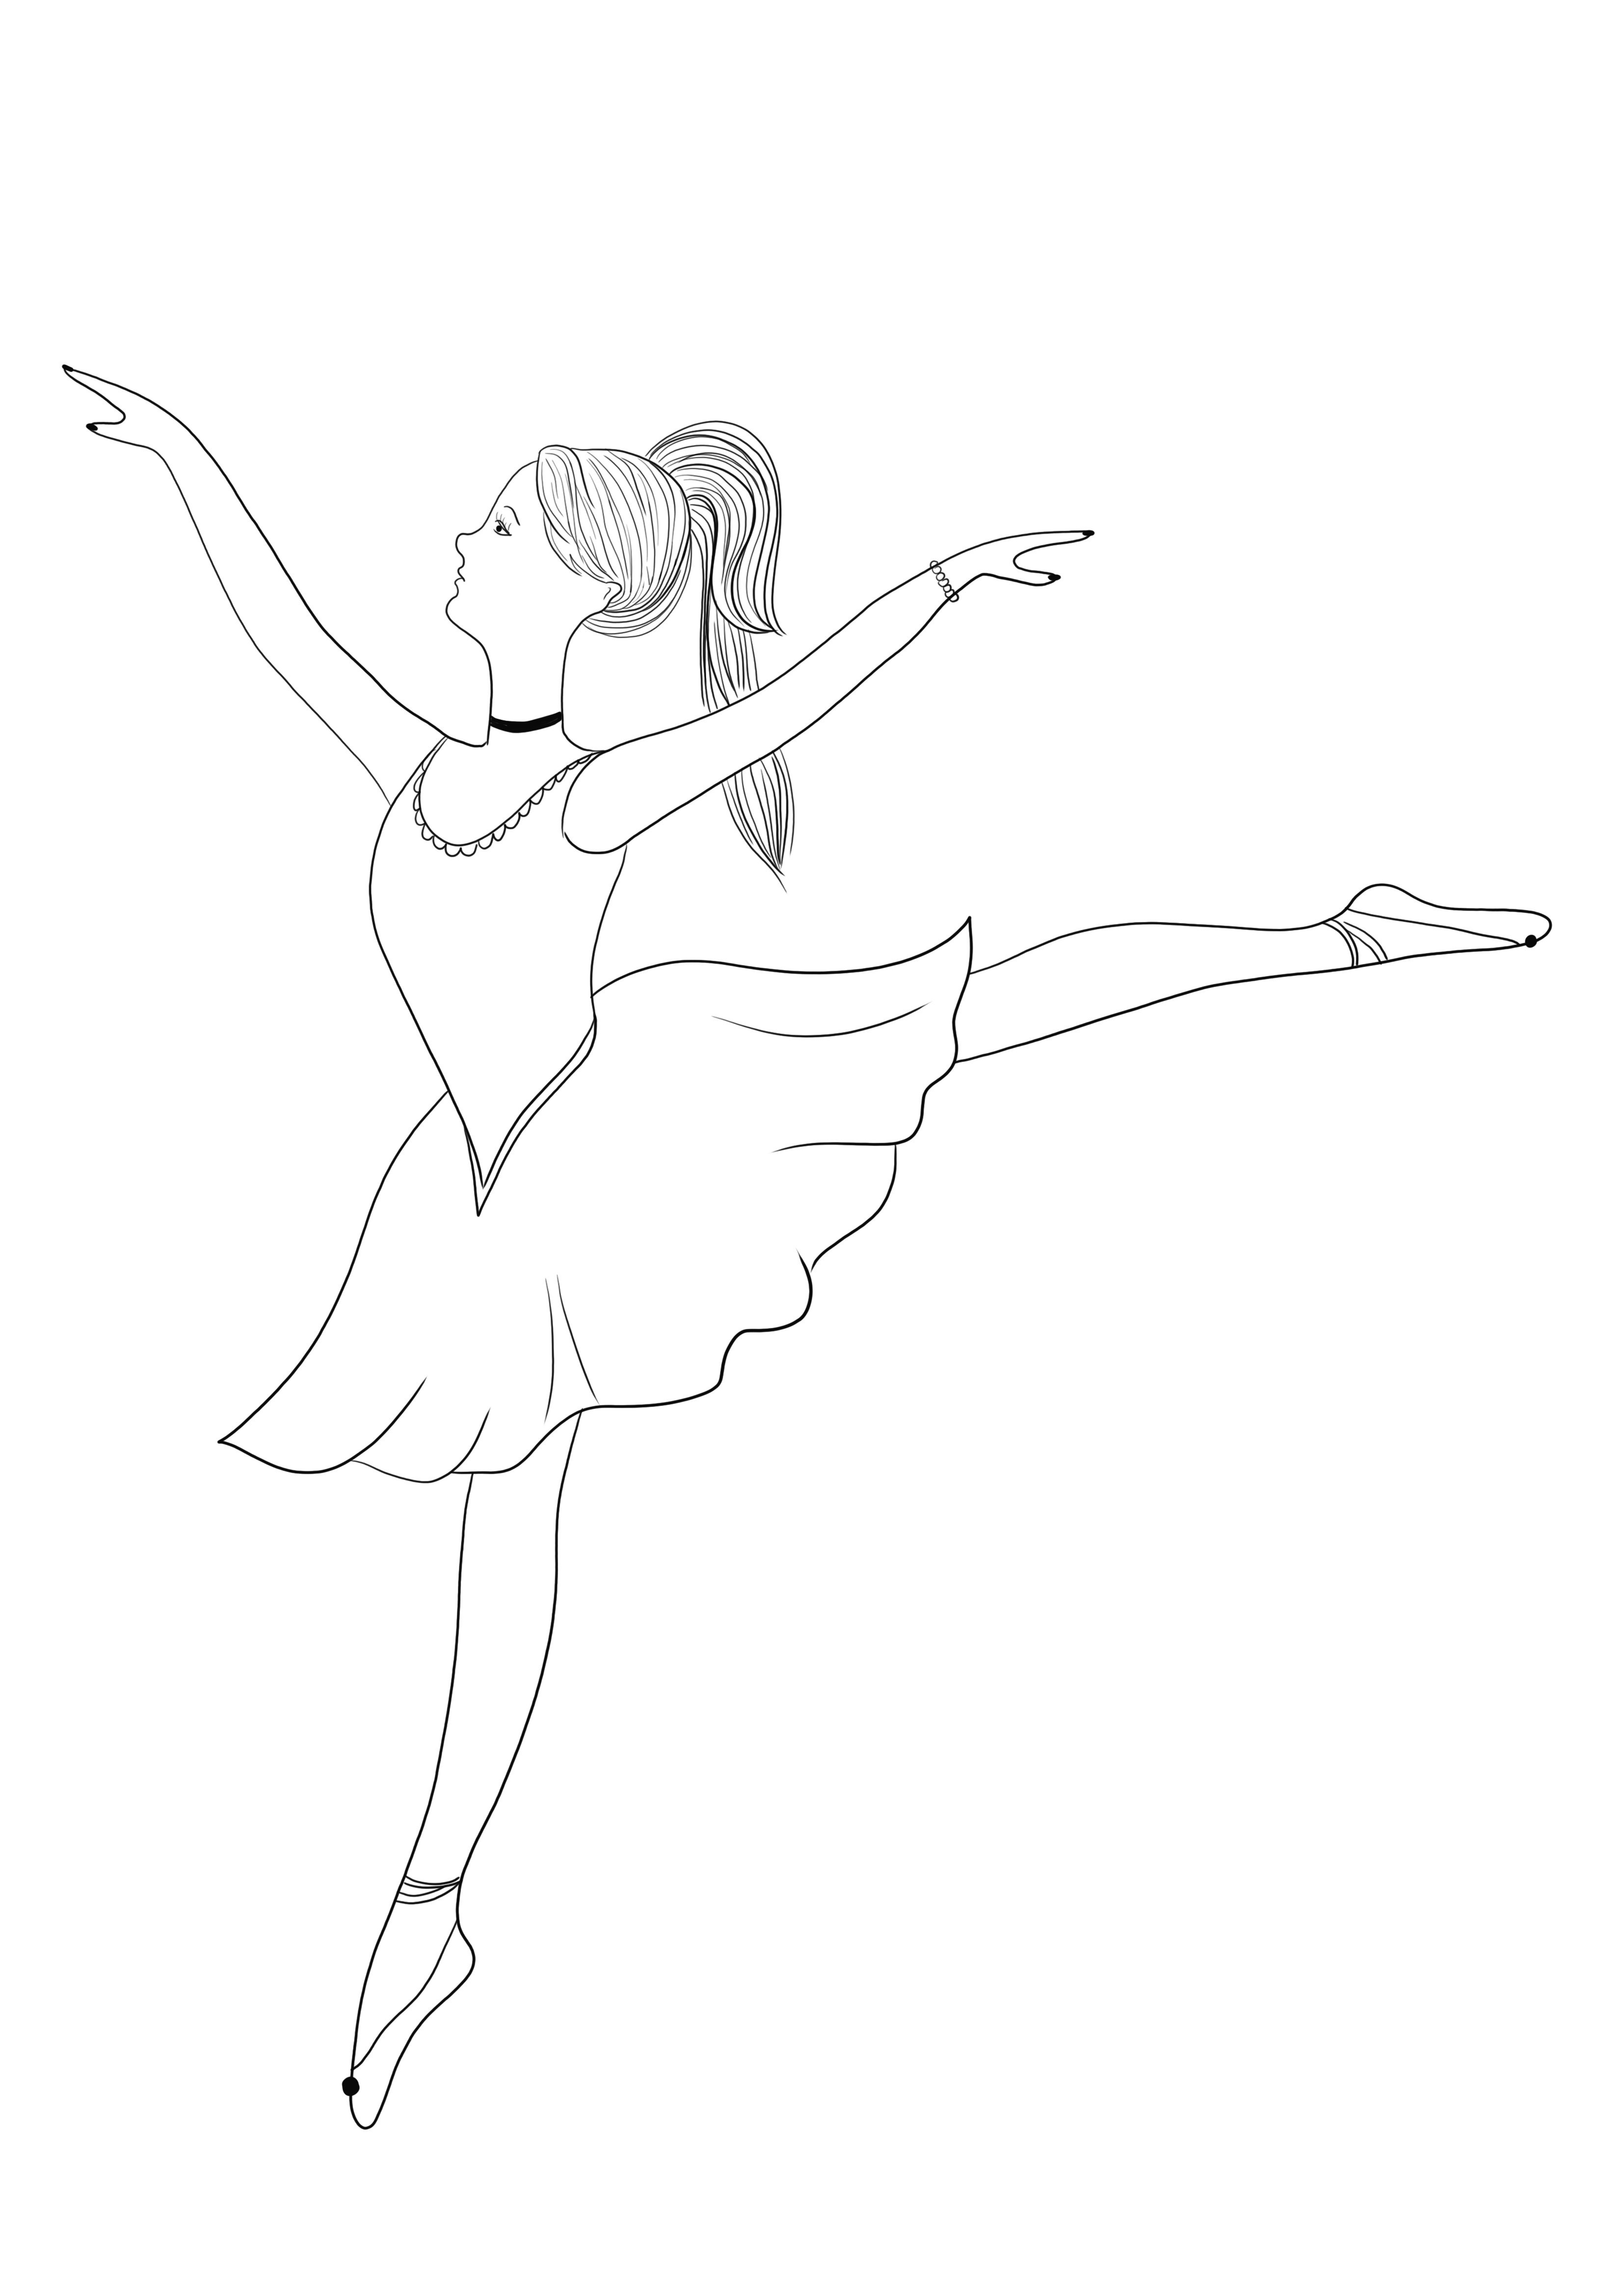 Gracious Ballerina to darmowy obraz do wydrukowania i pokolorowania dla dzieci w każdym wieku